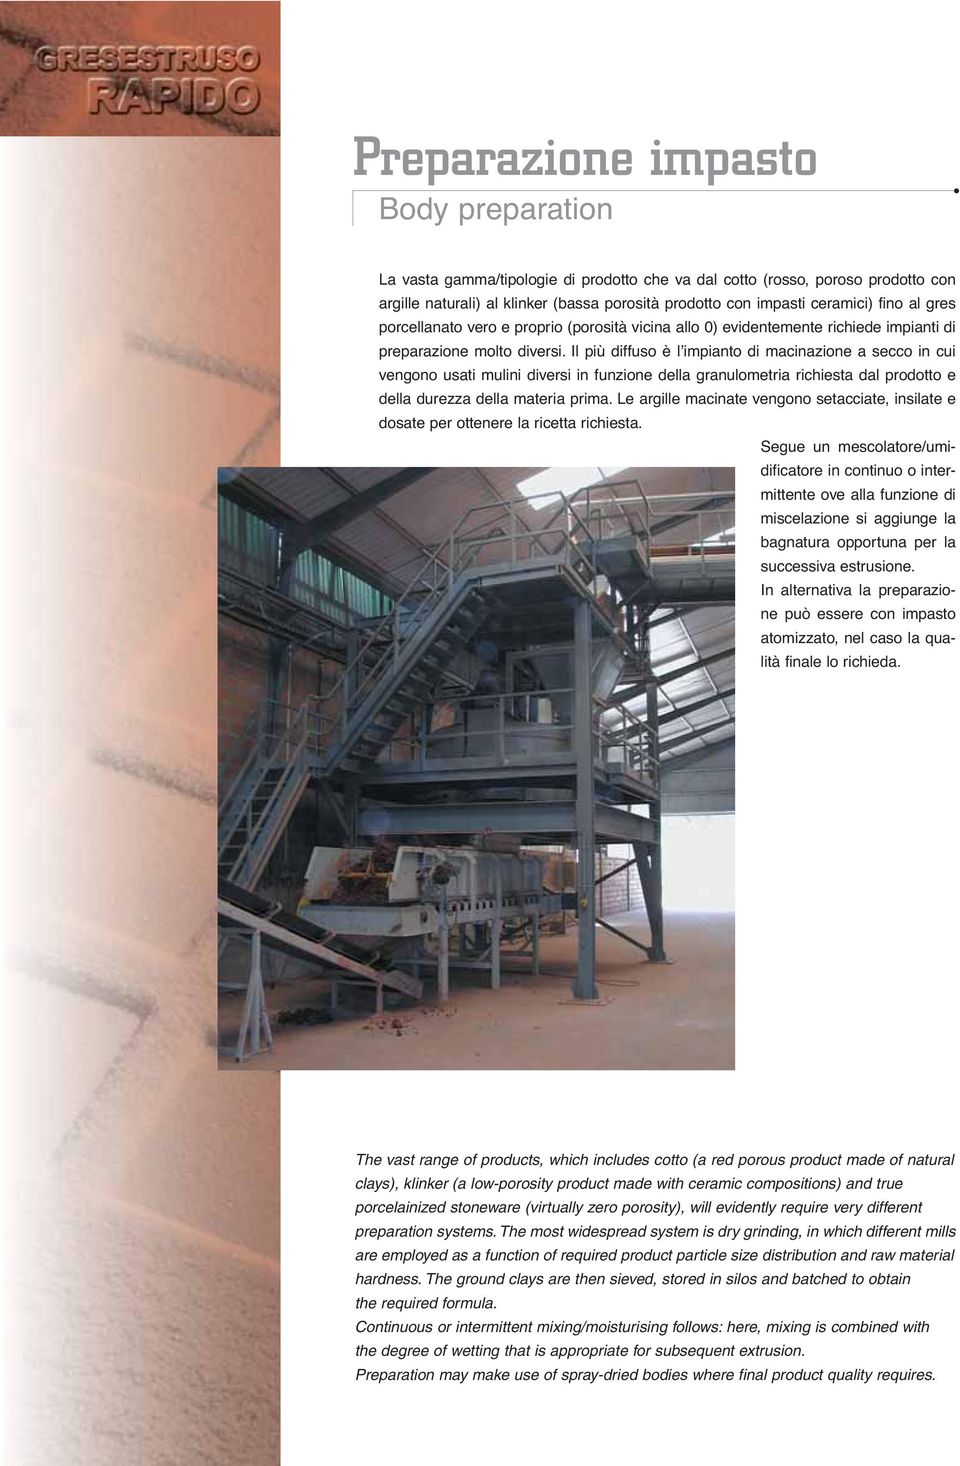 Il più diffuso è l impianto di macinazione a secco in cui vengono usati mulini diversi in funzione della granulometria richiesta dal prodotto e della durezza della materia prima.